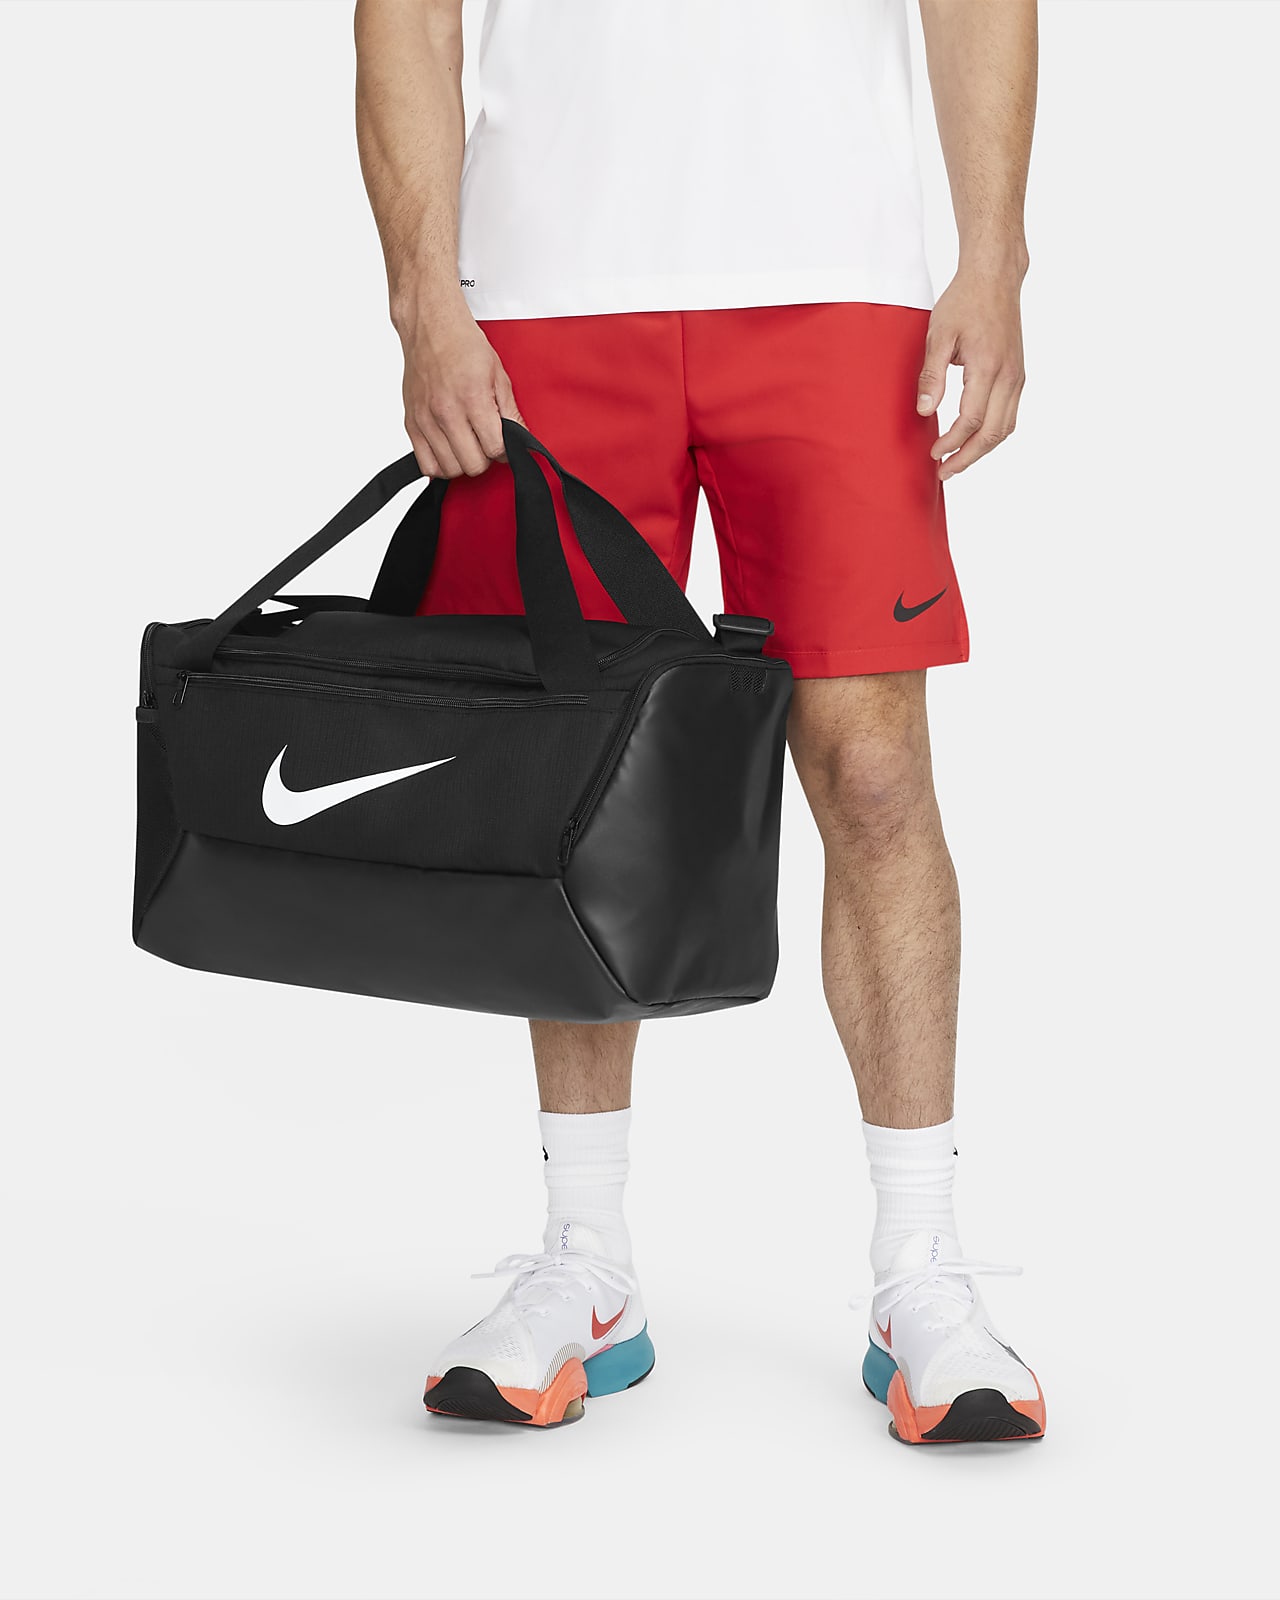 Nike Brasilia 9.5 Antrenman Spor Çantası (Küçük Boy, 41 L)